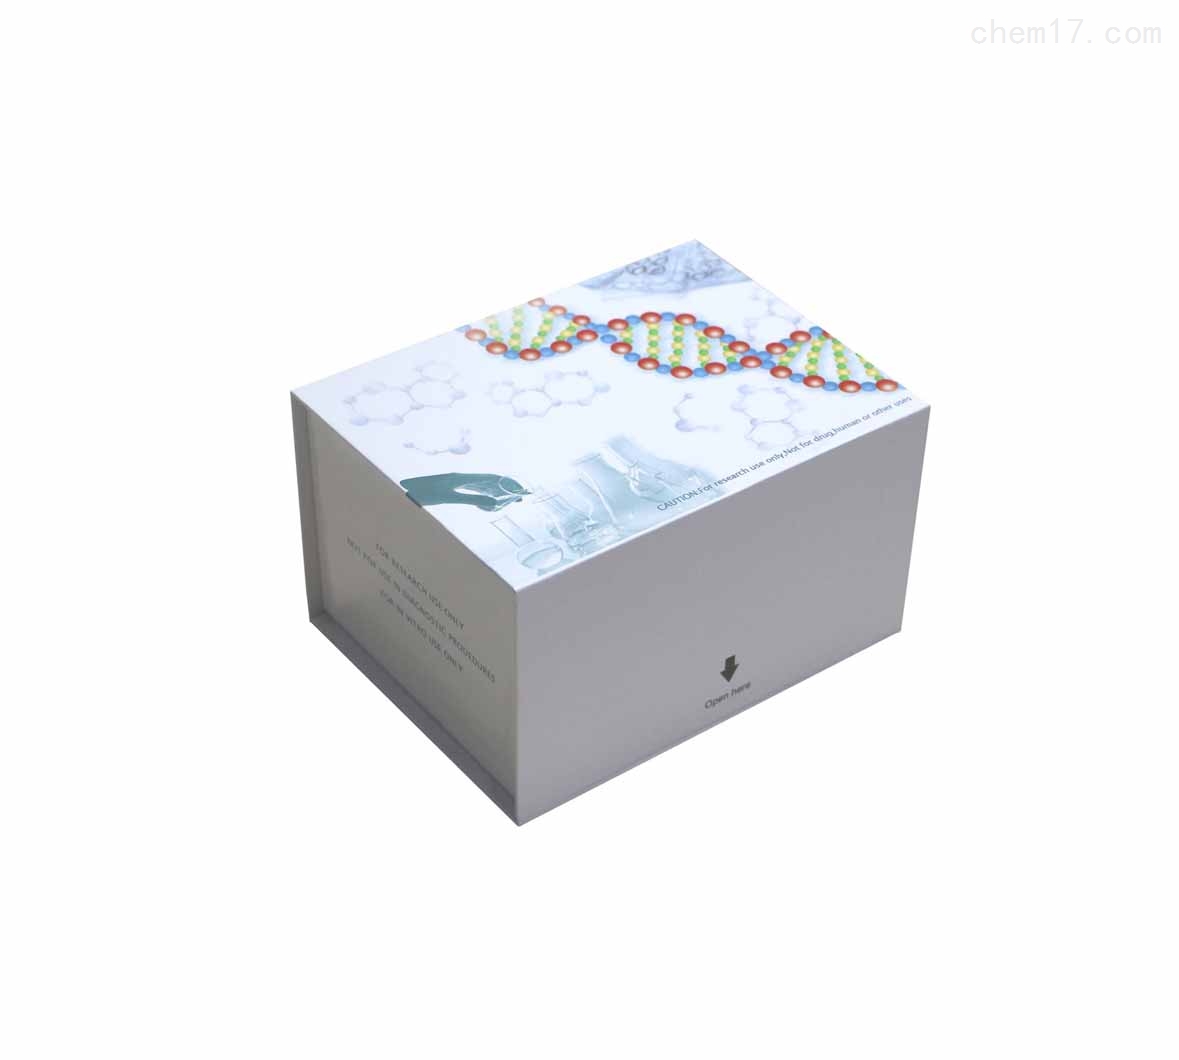 人泛素激活酶(E1/UBAE)ELISA试剂盒